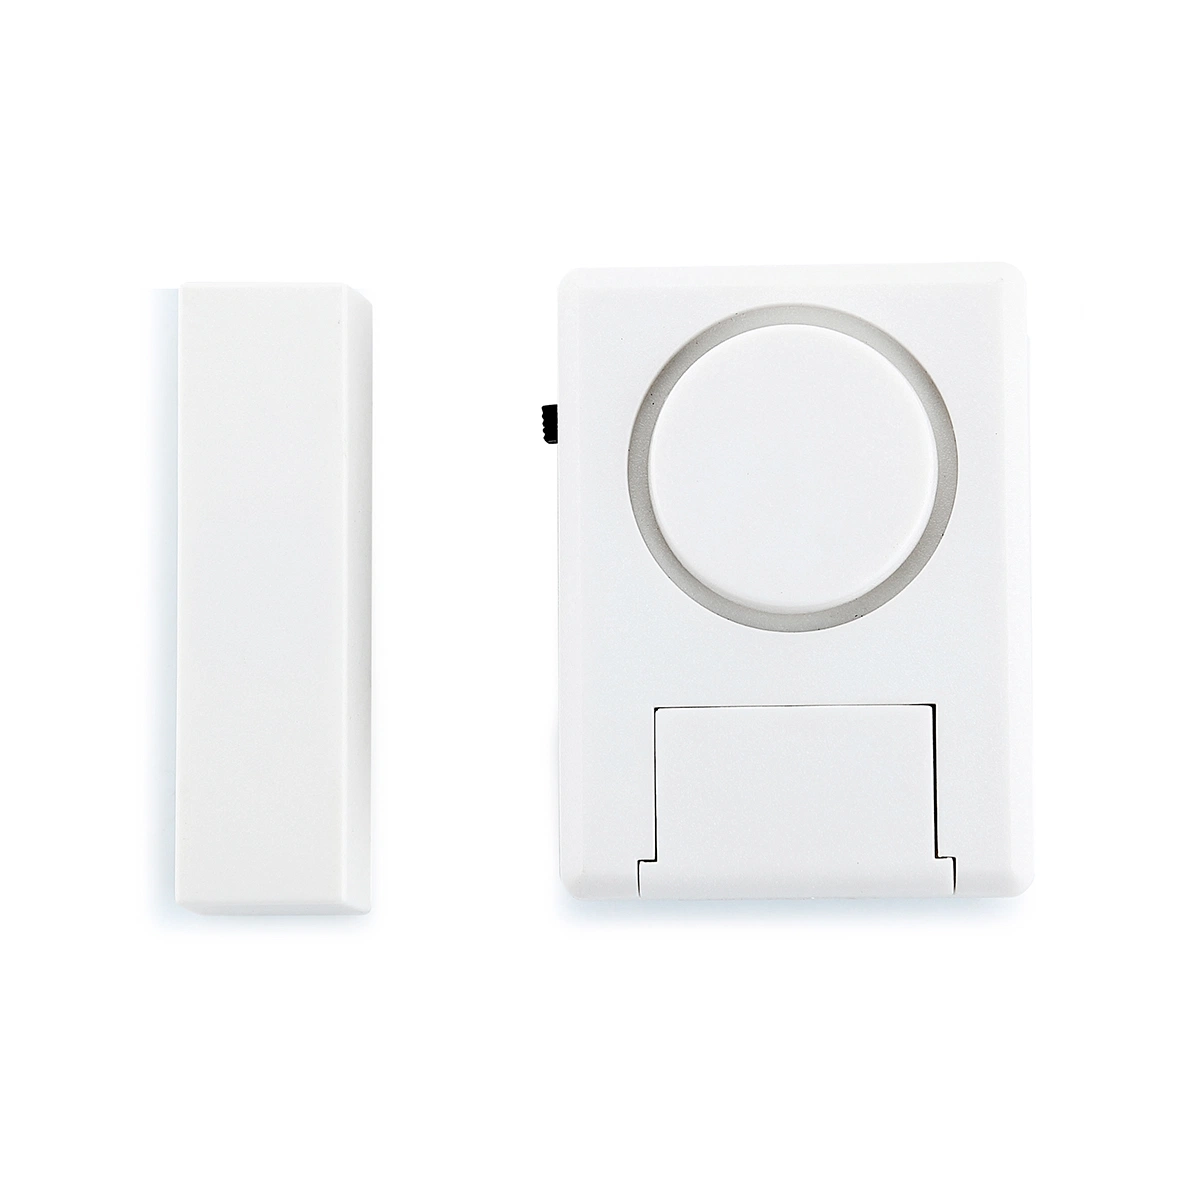 Home Window Door Mini Magnetic Siren Alarm Security Systems